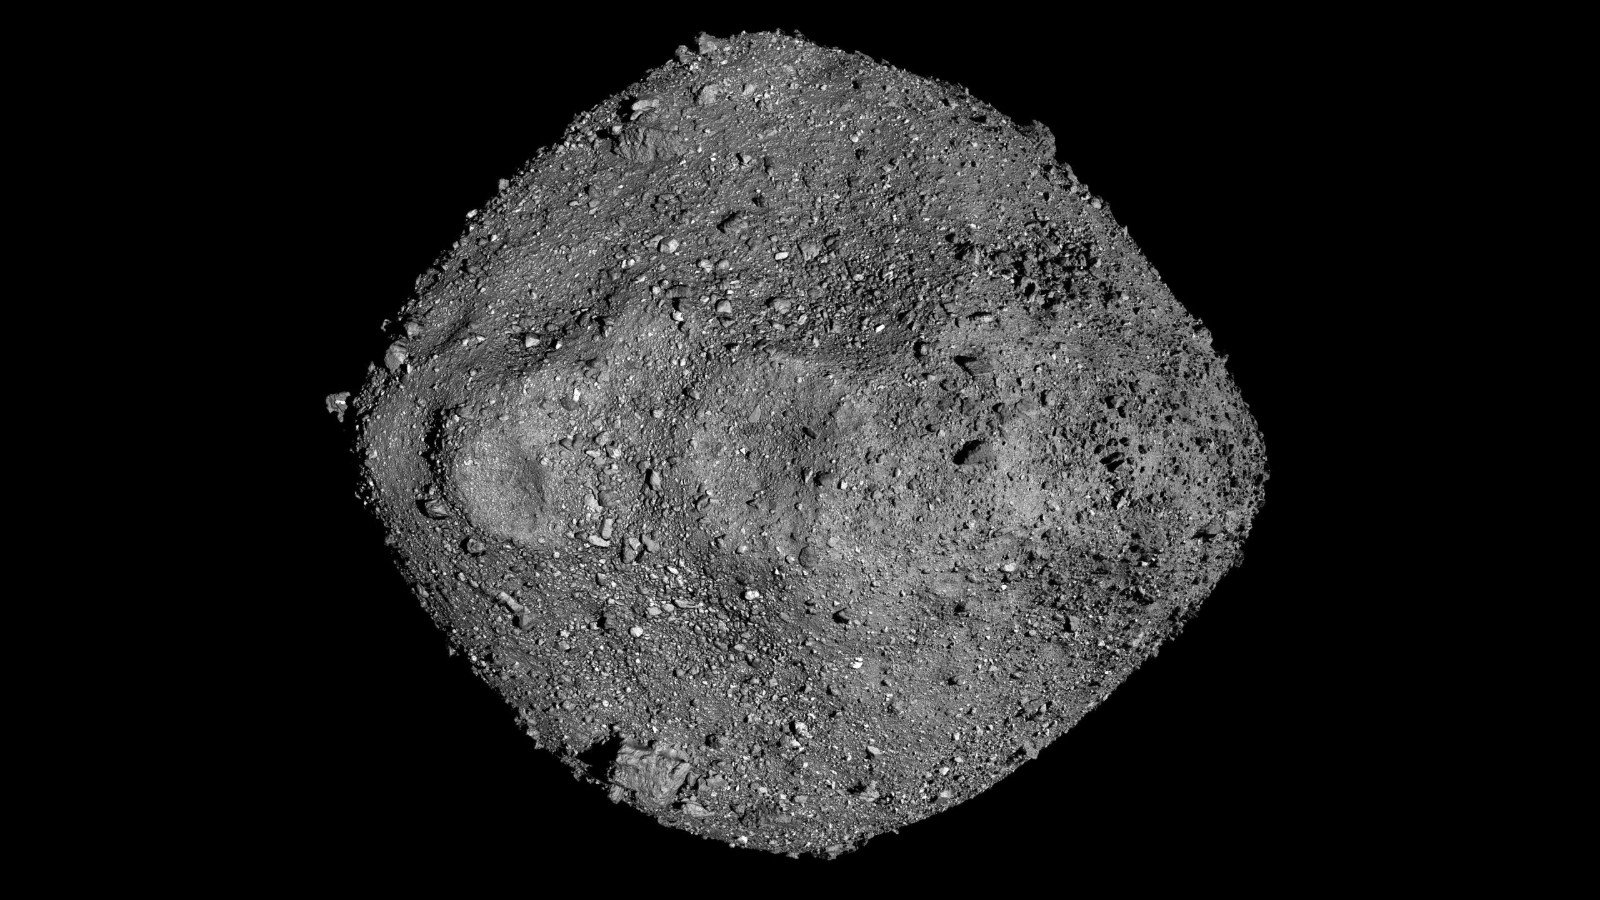 研究发现类似贝努Bennu这样高度多孔的小行星 其表面或缺乏细颗粒物